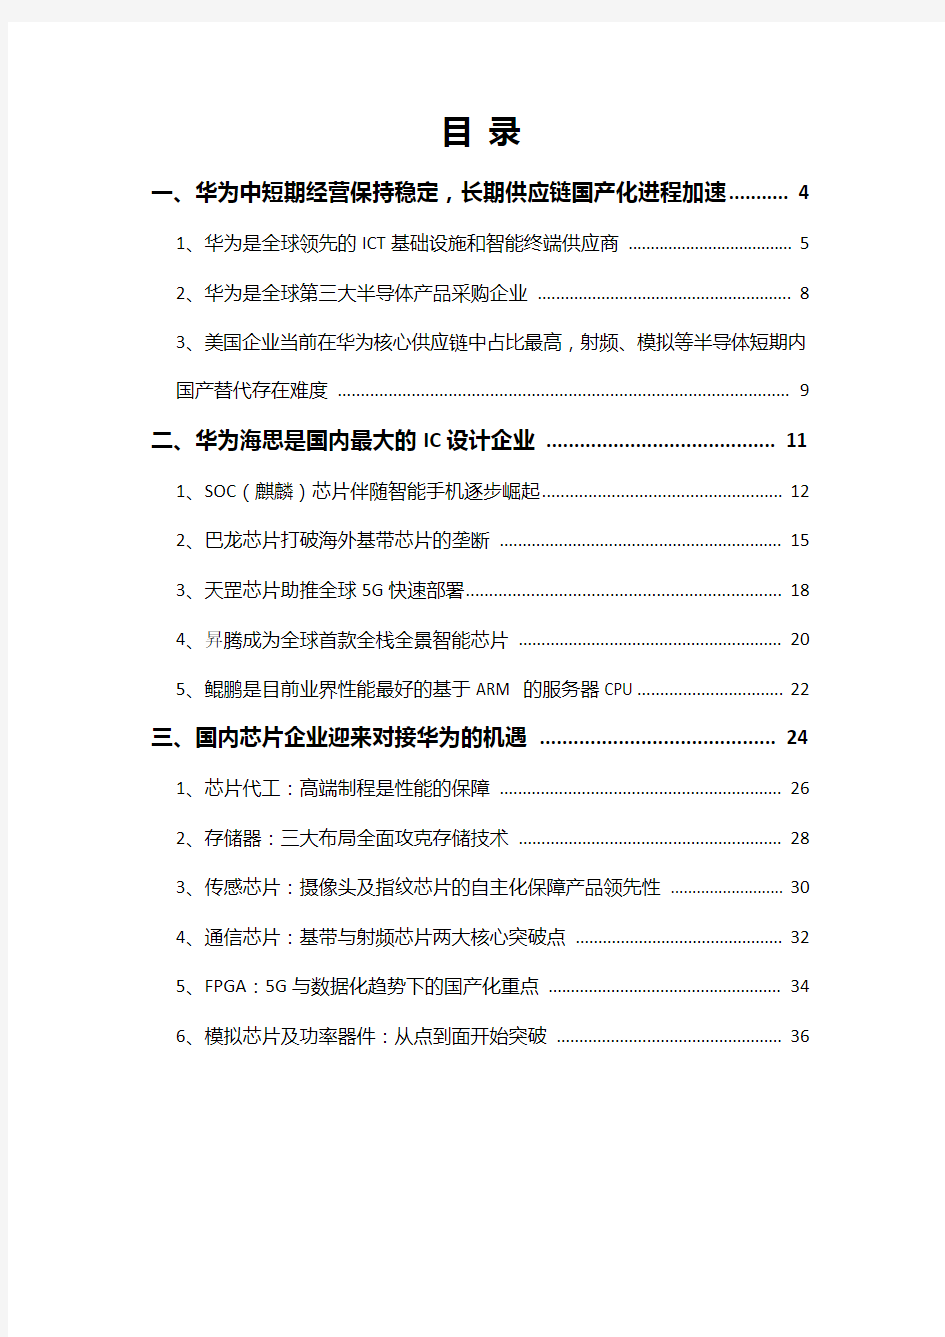 2019年华为芯片国产化行业分析报告